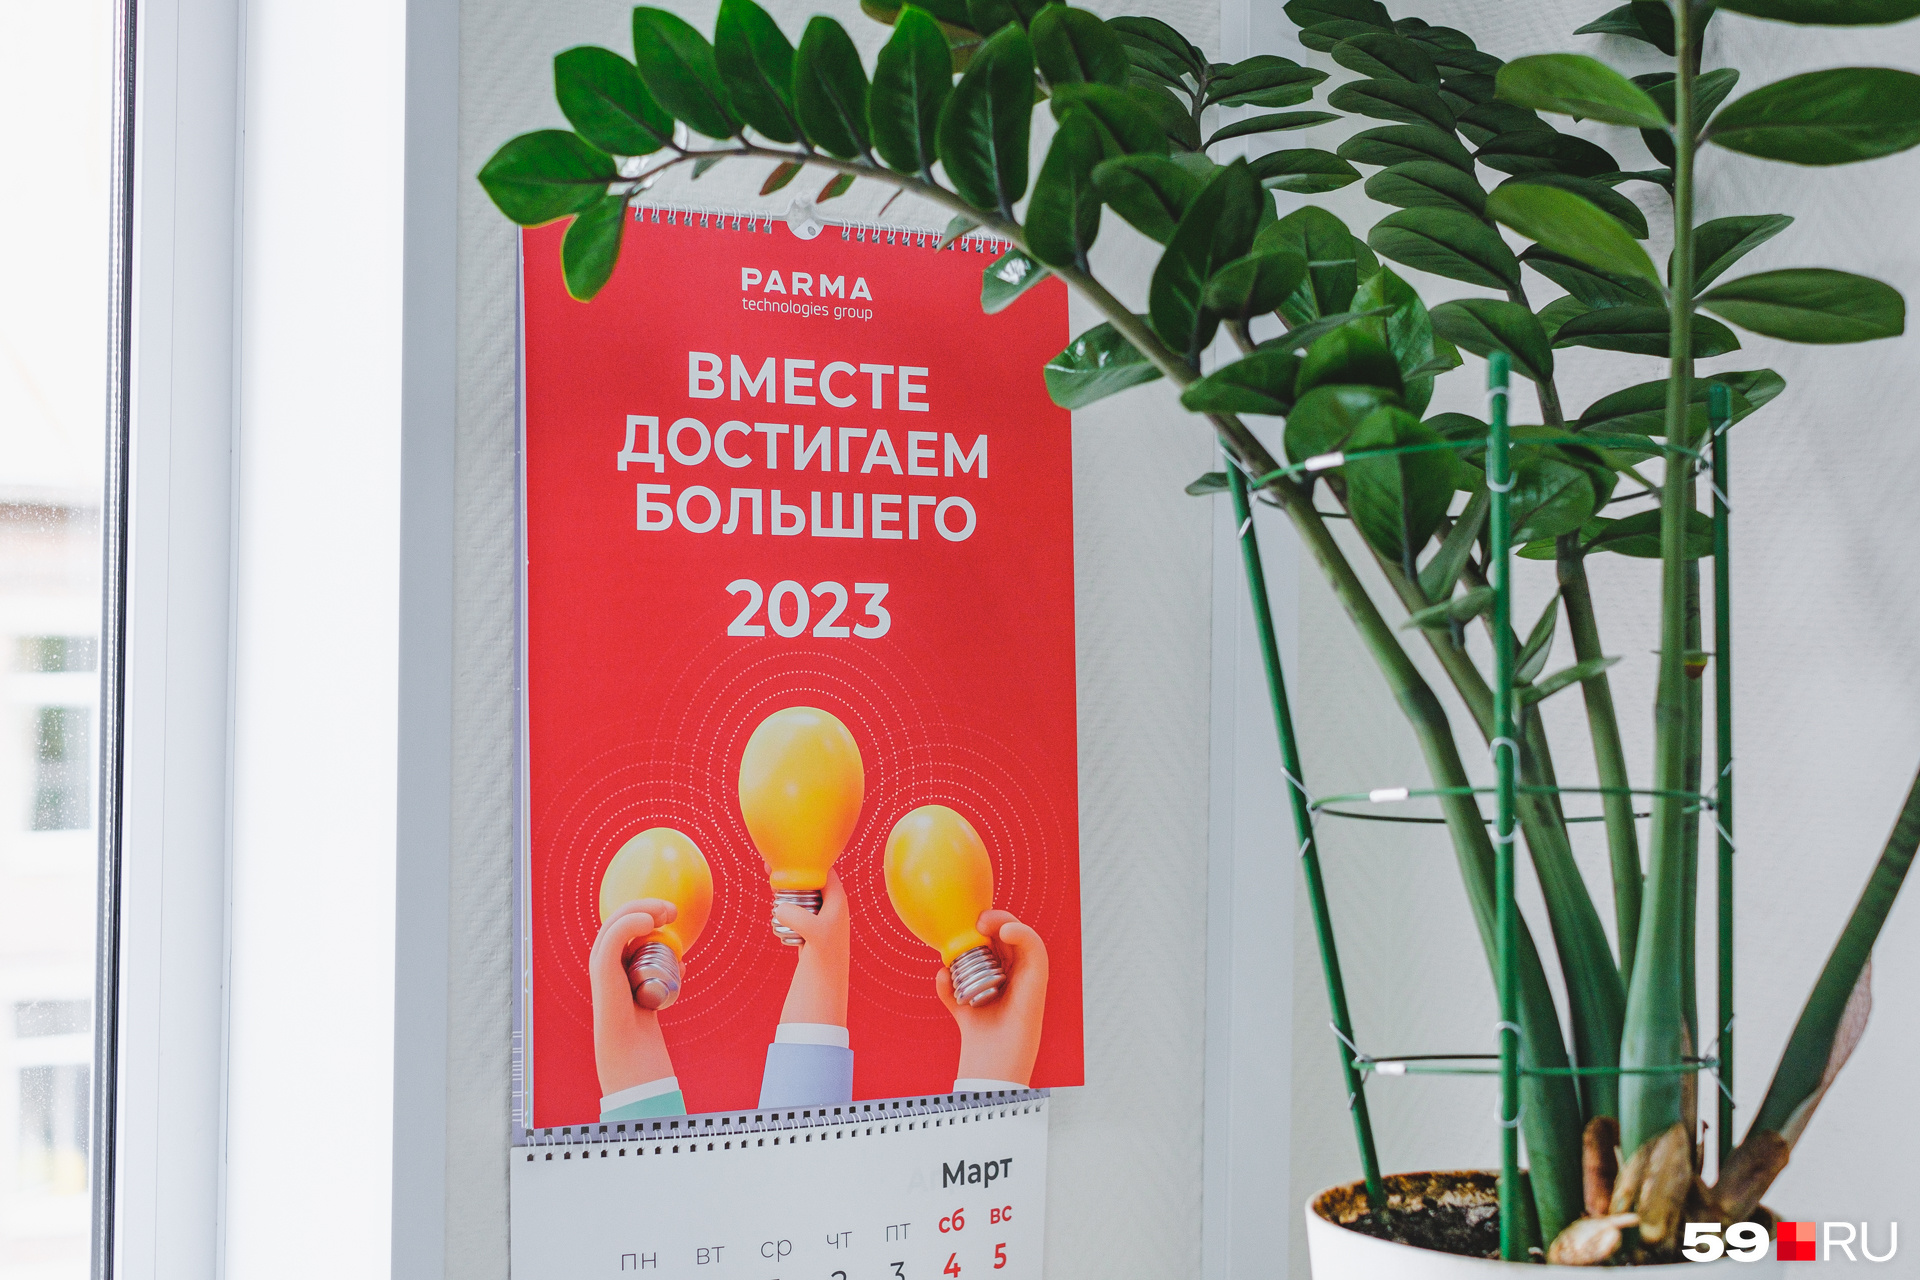 Этот календарь отмечен наградами на Всероссийском конкурсе корпоративных <nobr class="_">календарей — 2022</nobr>: дипломом лауреата в номинации «Лучшая команда» и дипломом в номинации «Информационный календарь»